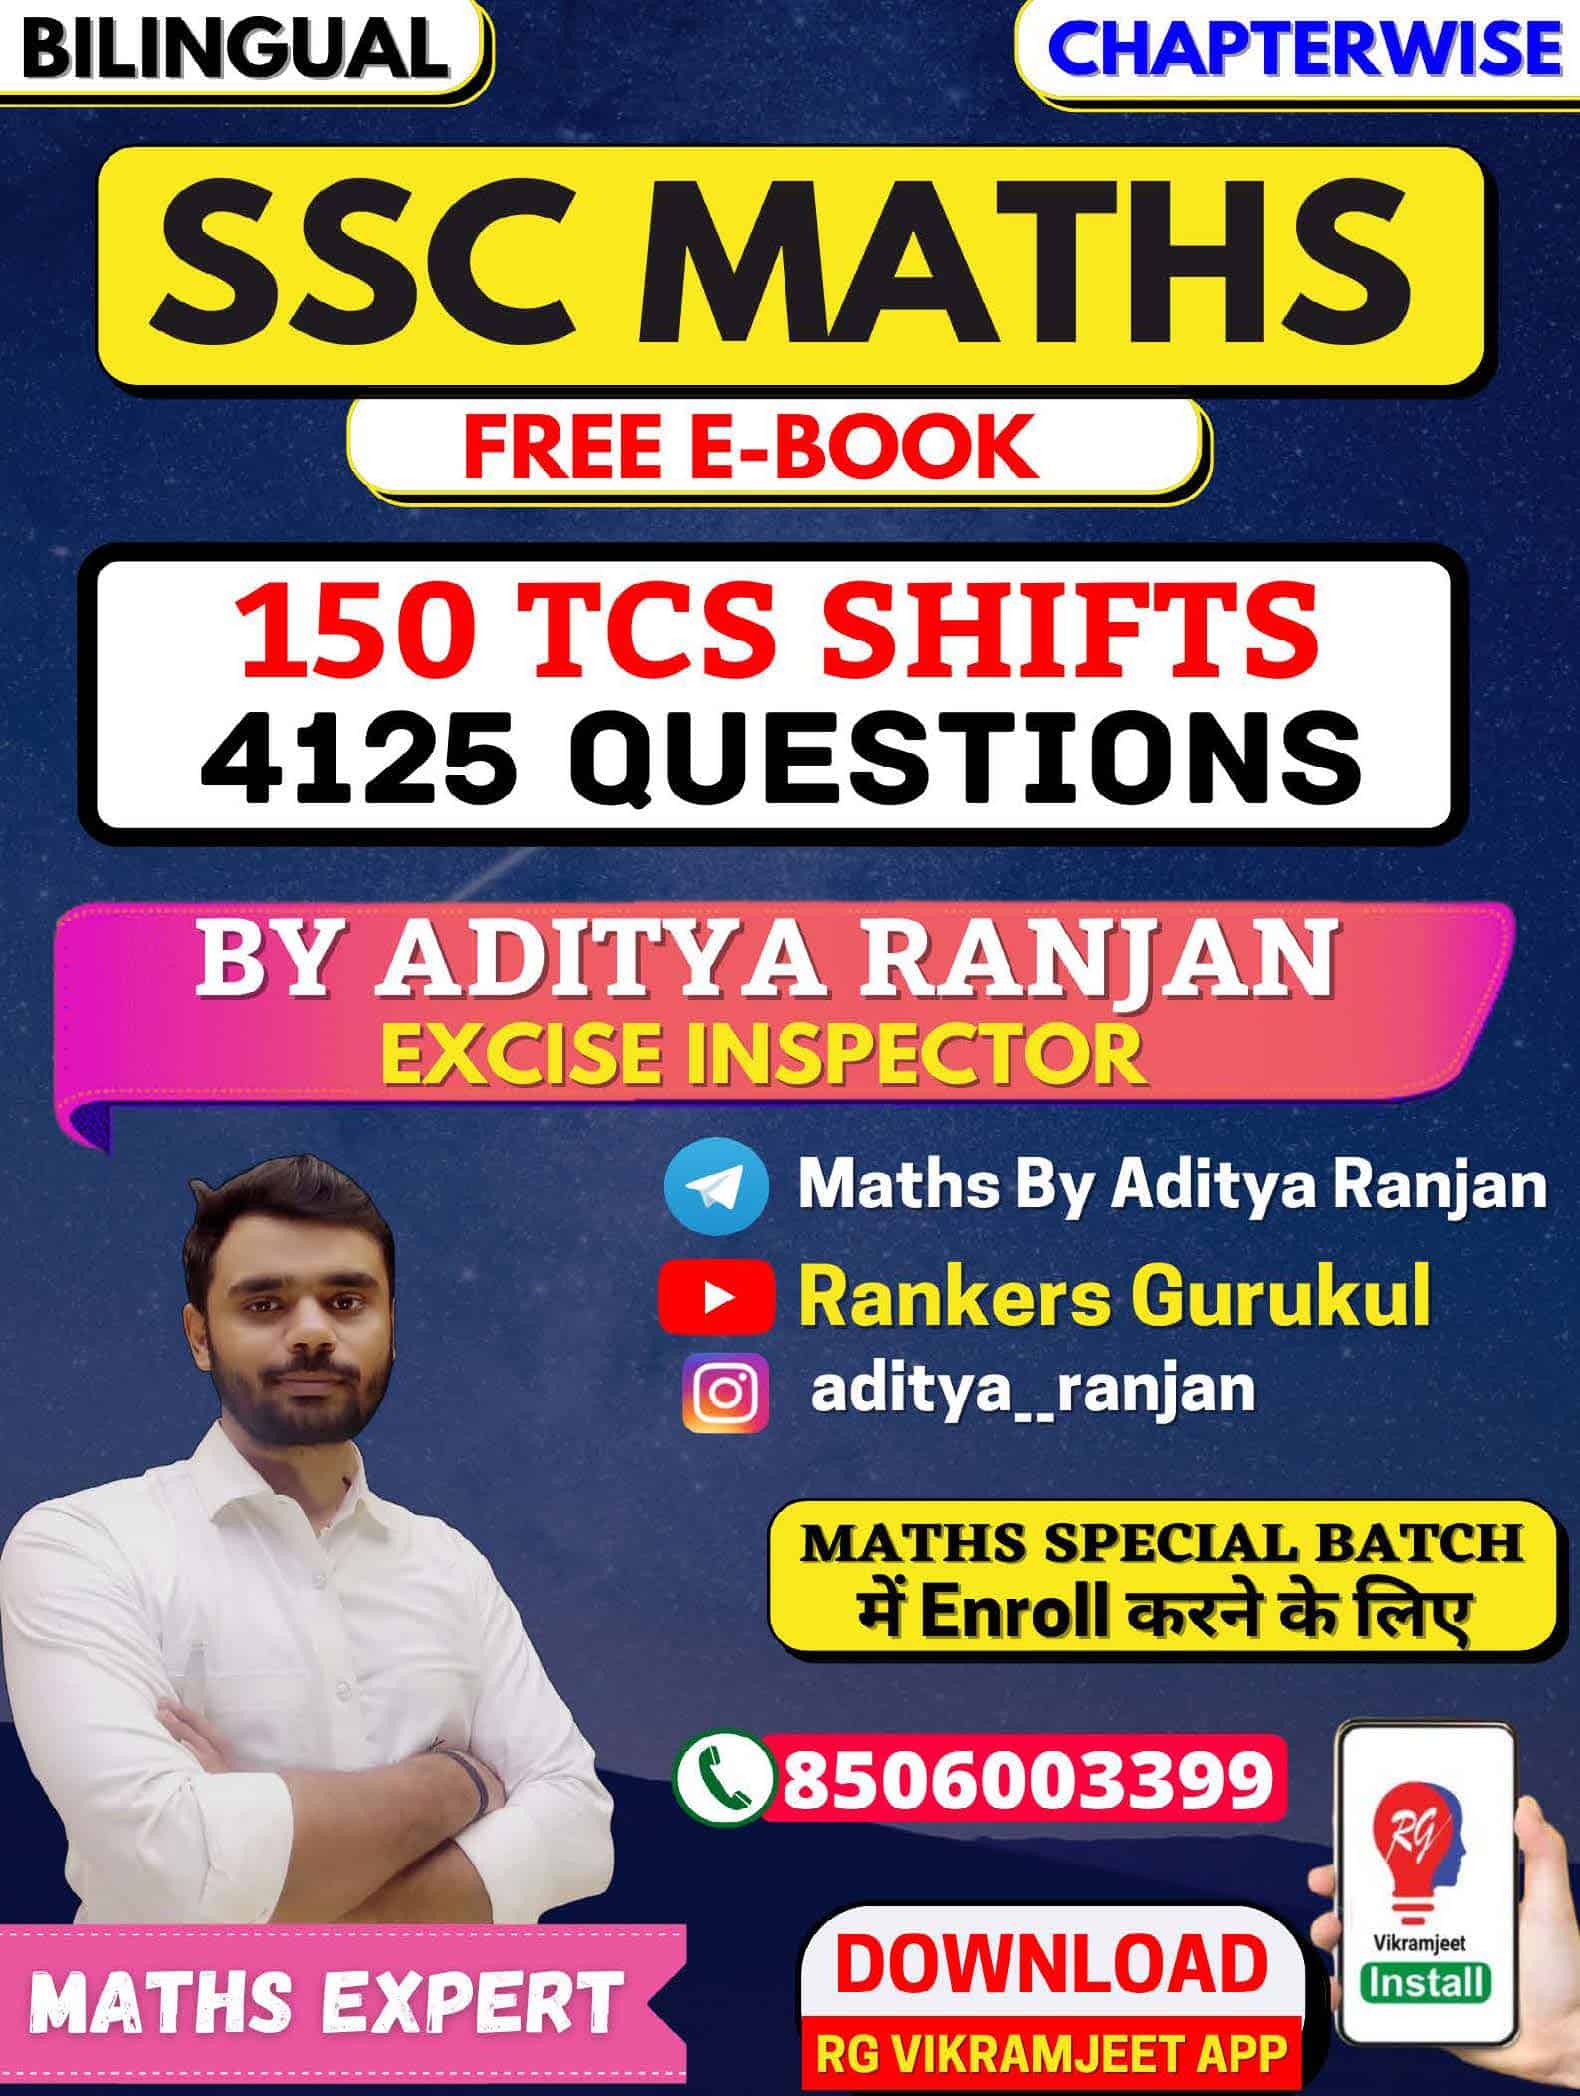 SSC Maths E-book 150 TCS Shifts 4125 Questions - Aditya Ranjan